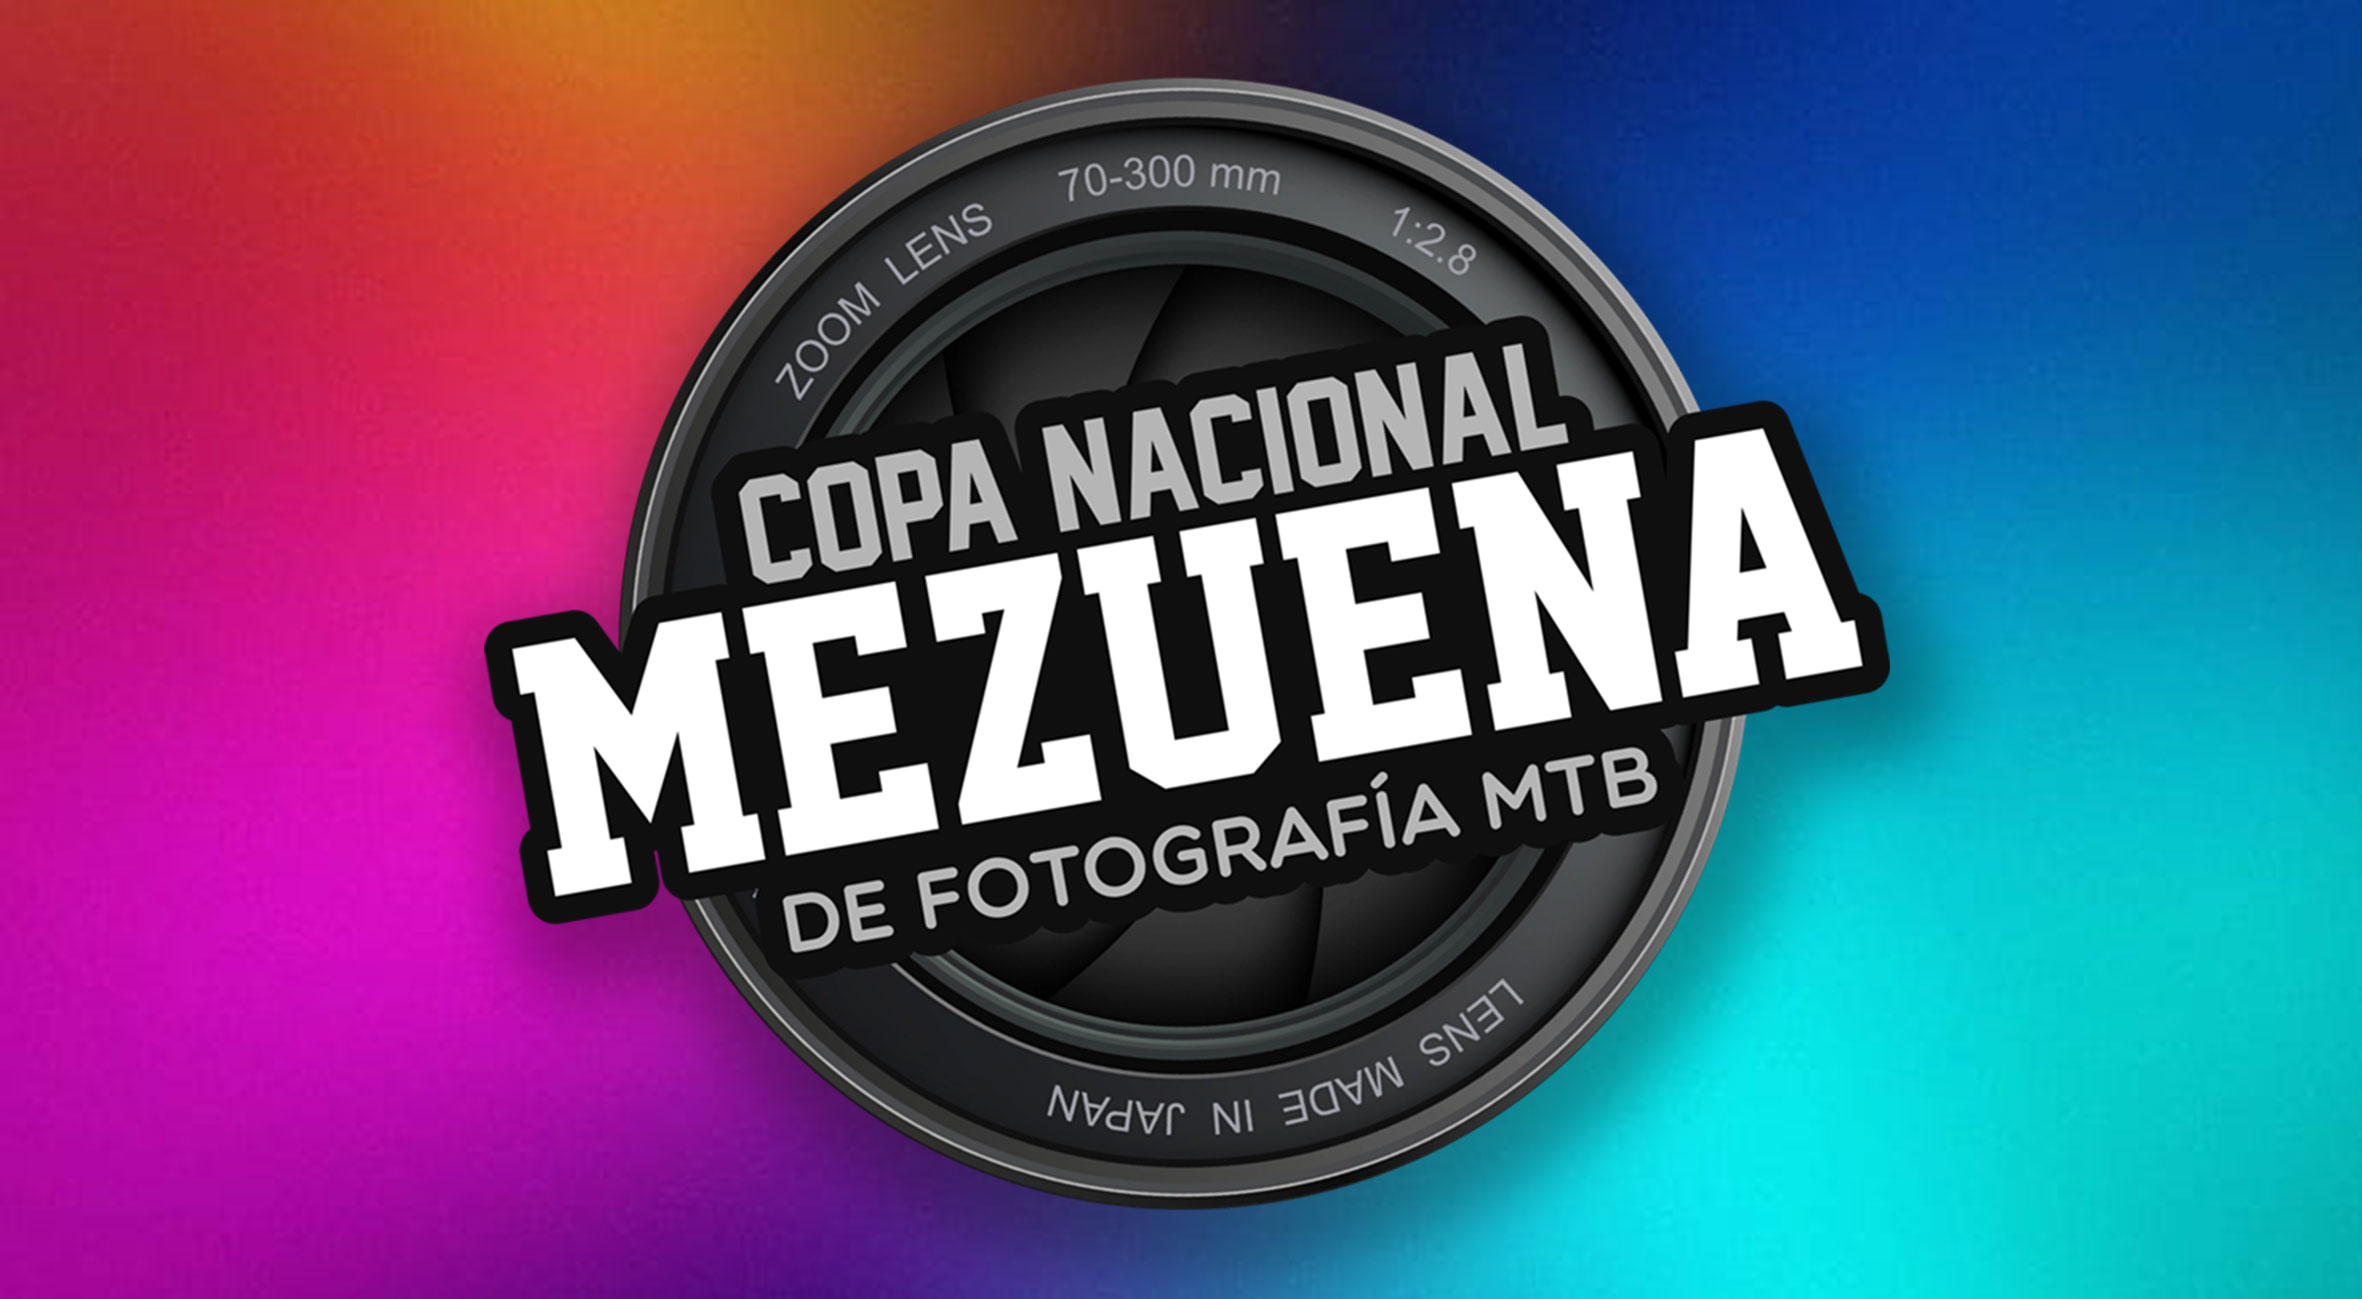 Participa en la Copa Mezuena de fotografía!